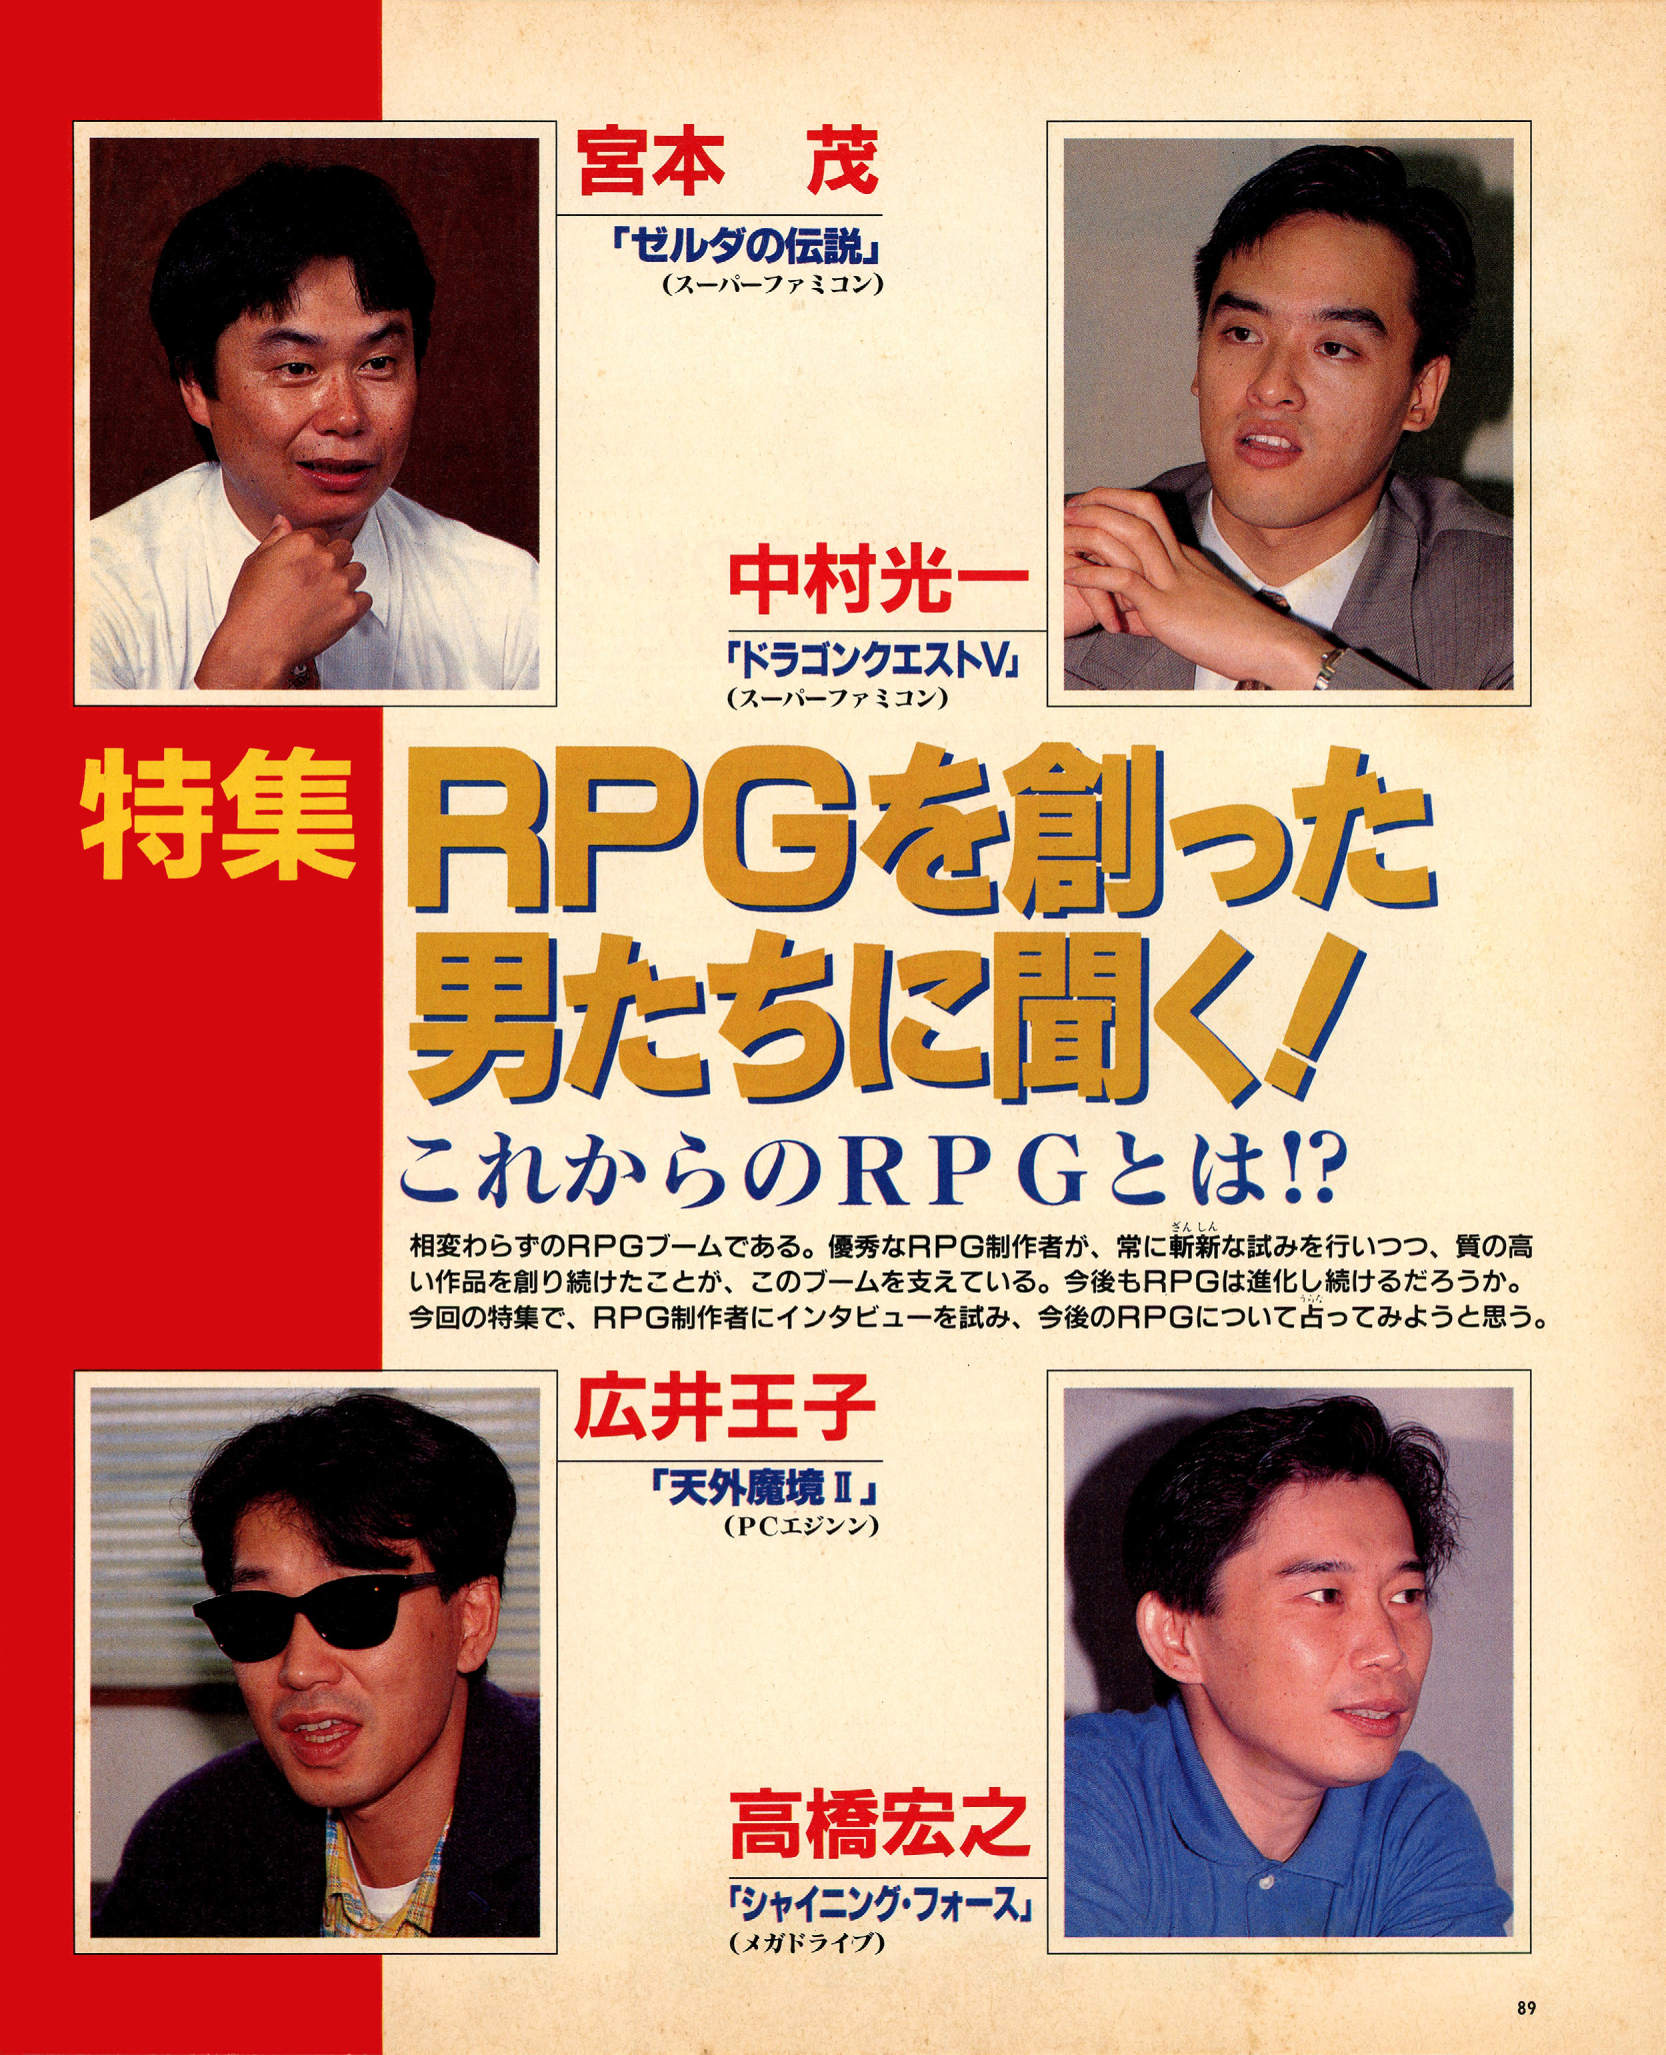 Shigeru Miyamoto interview archive project links and info